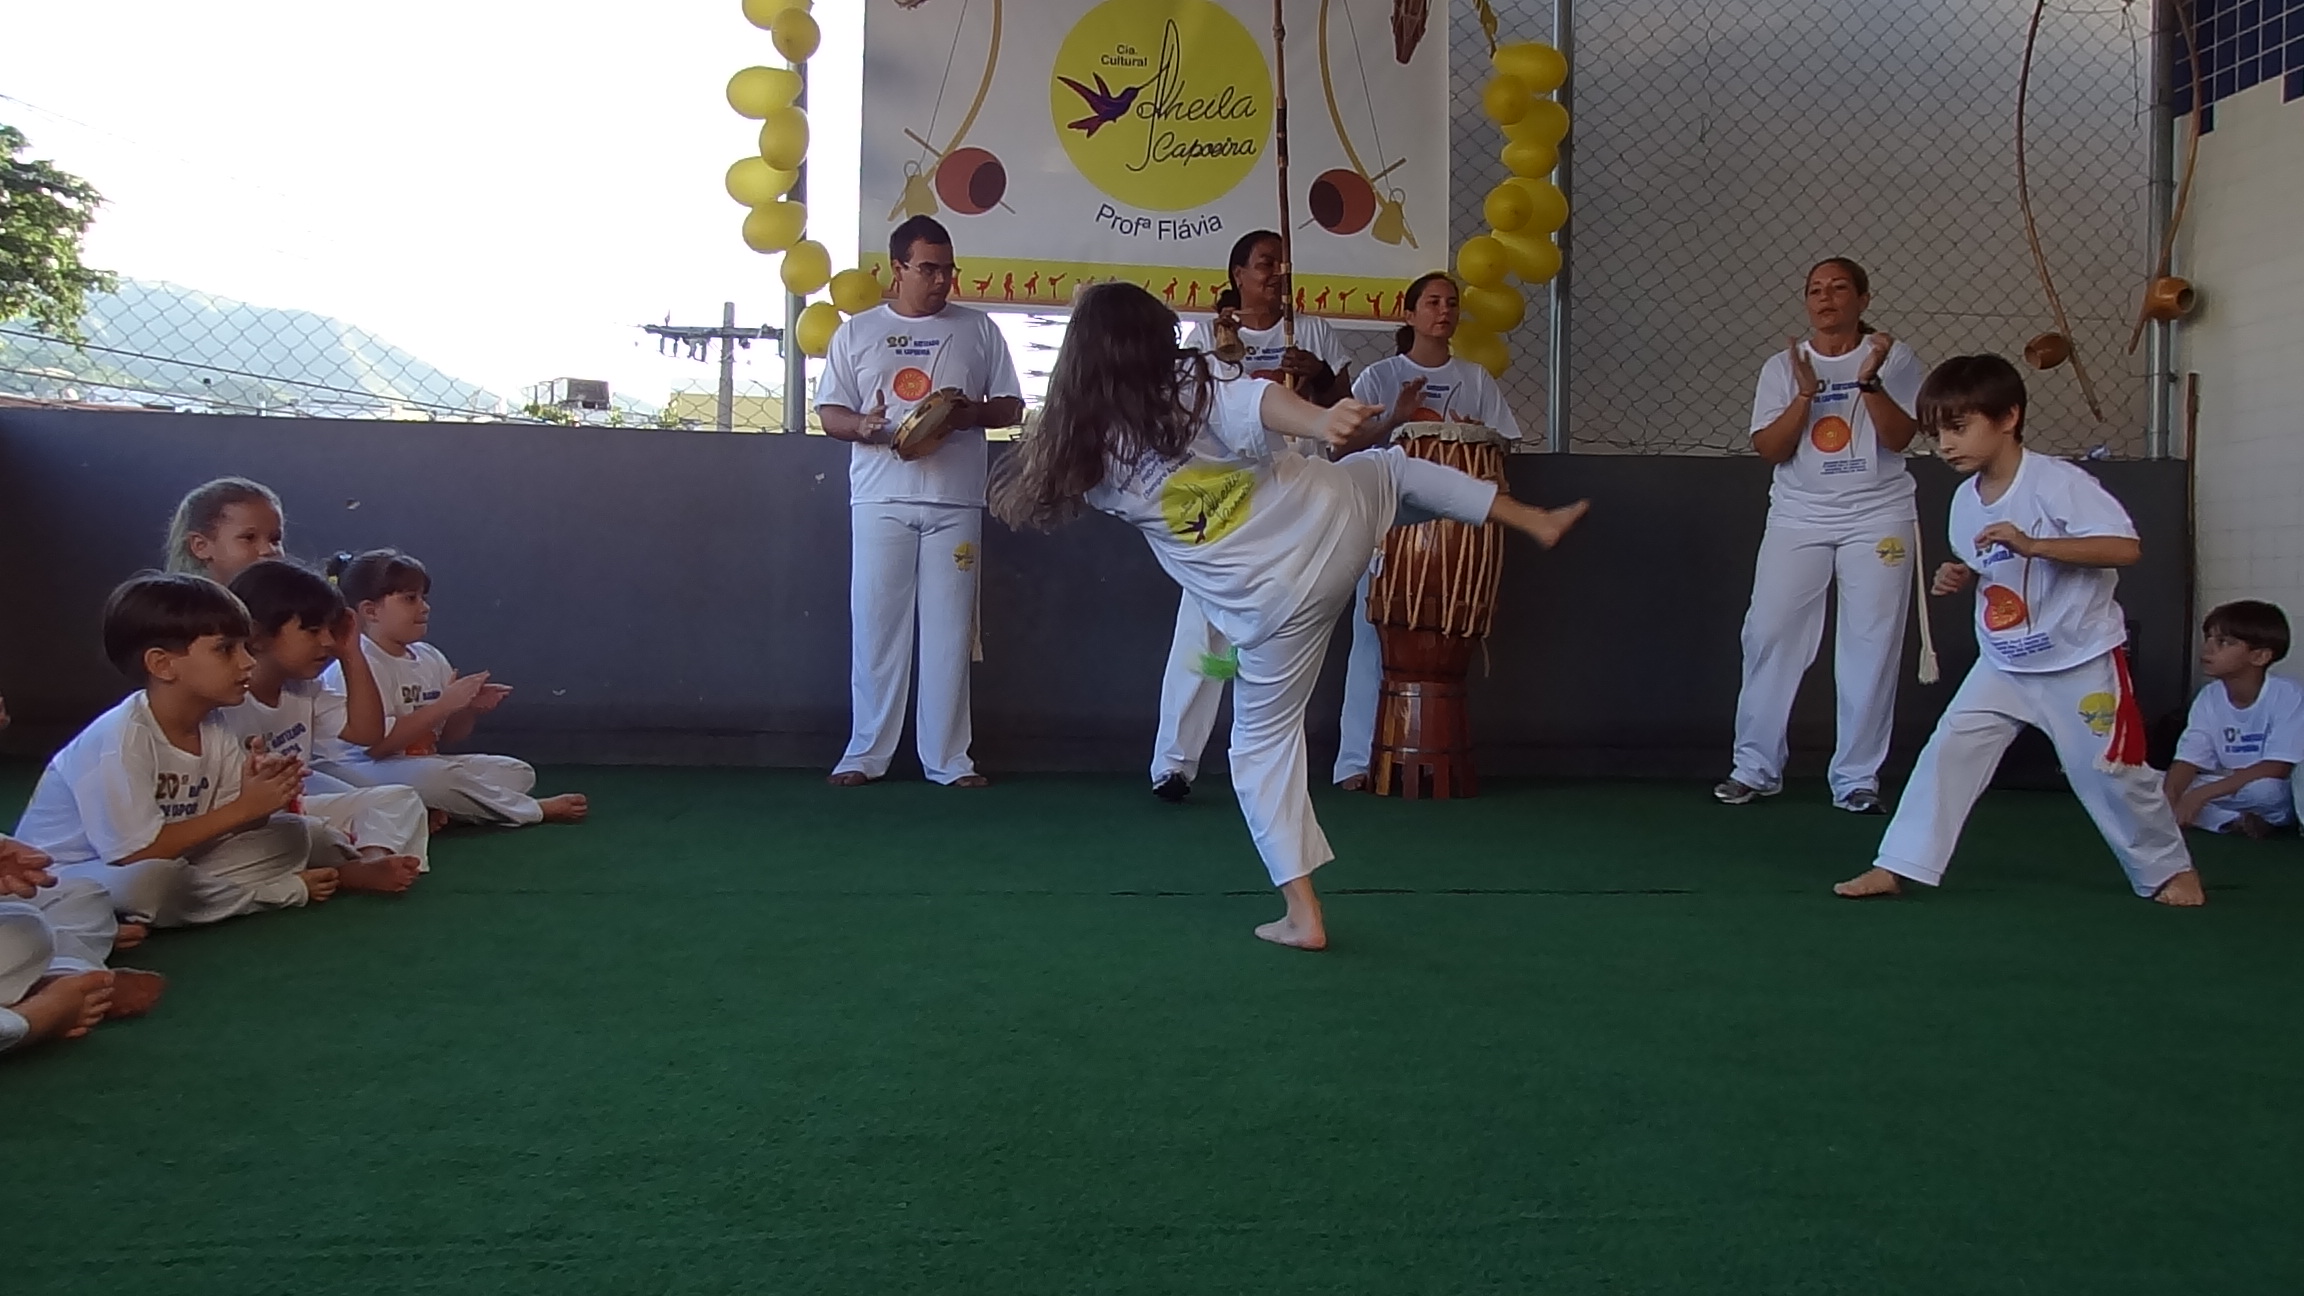 Amanda jogando capoeira com o amigo